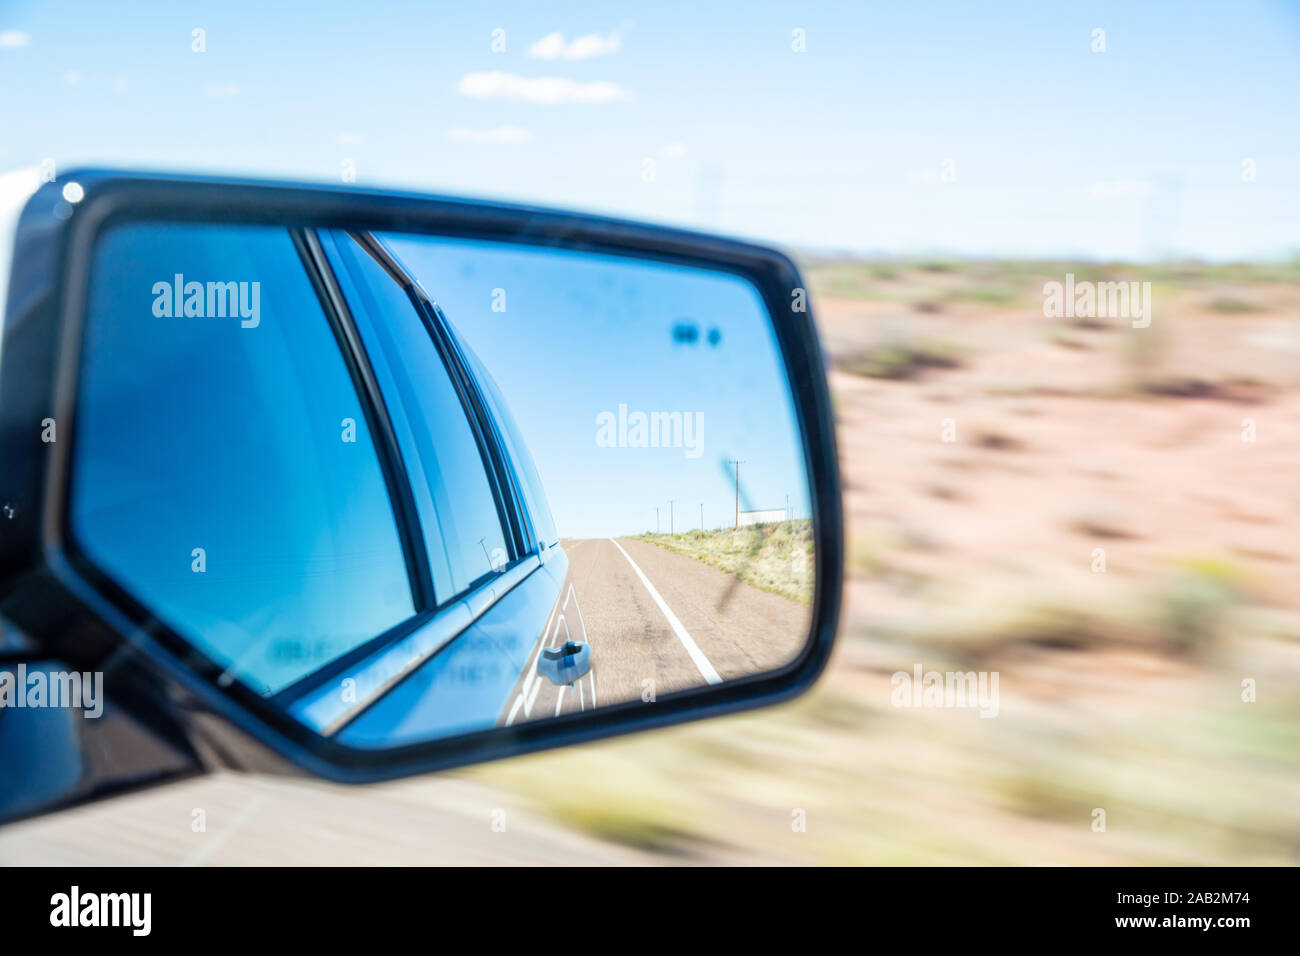 La conduite sur une route dans le désert américain. Freeway reflète dans une voiture wing mirror dans une journée de printemps, flou, fond du désert Banque D'Images